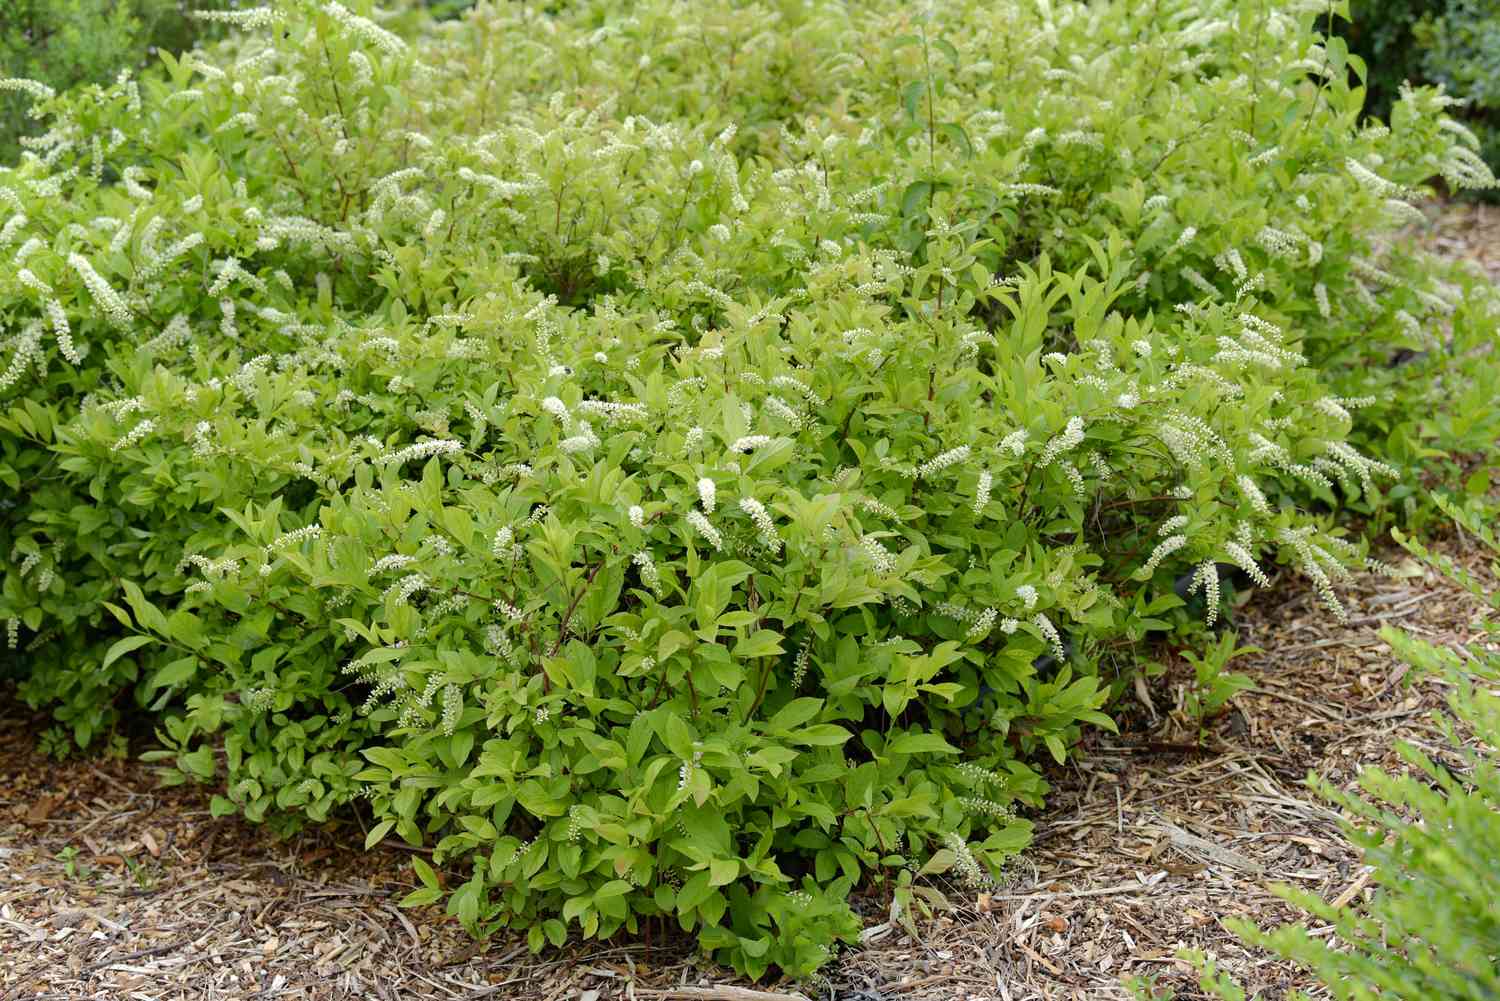 Virginia Sweetspire Strauch mit hellgrünen Blättern und kleinen weißen zylindrischen Blüten, umgeben von Mulch